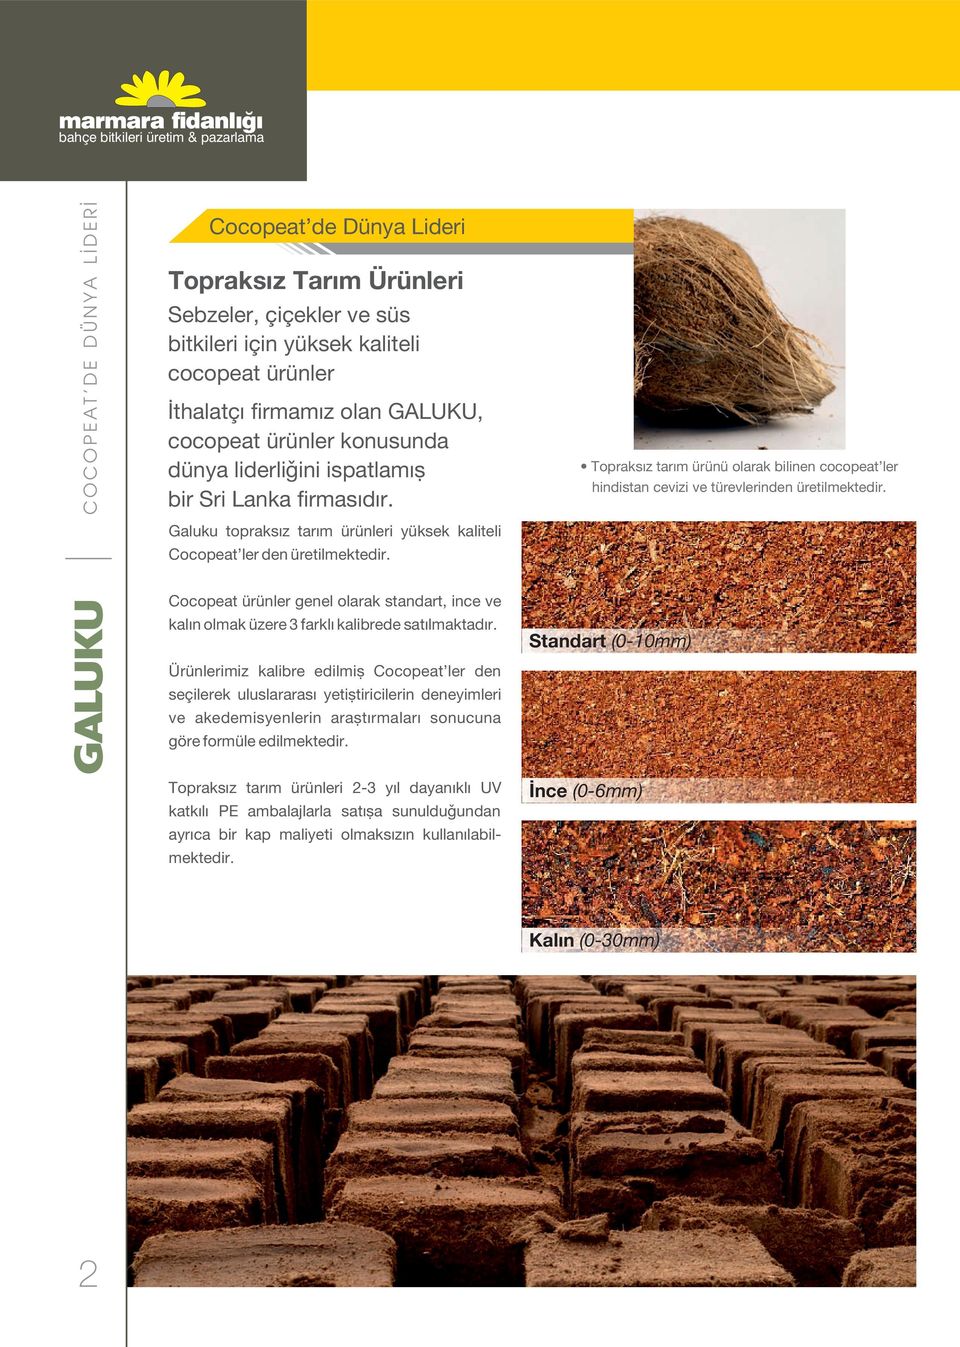 Topraksız tarım ürünü olarak bilinen cocopeat ler hindistan cevizi ve türevlerinden üretilmektedir. Cocopeat ürünler genel olarak standart, ince ve kalın olmak üzere 3 farklı kalibrede satılmaktadır.